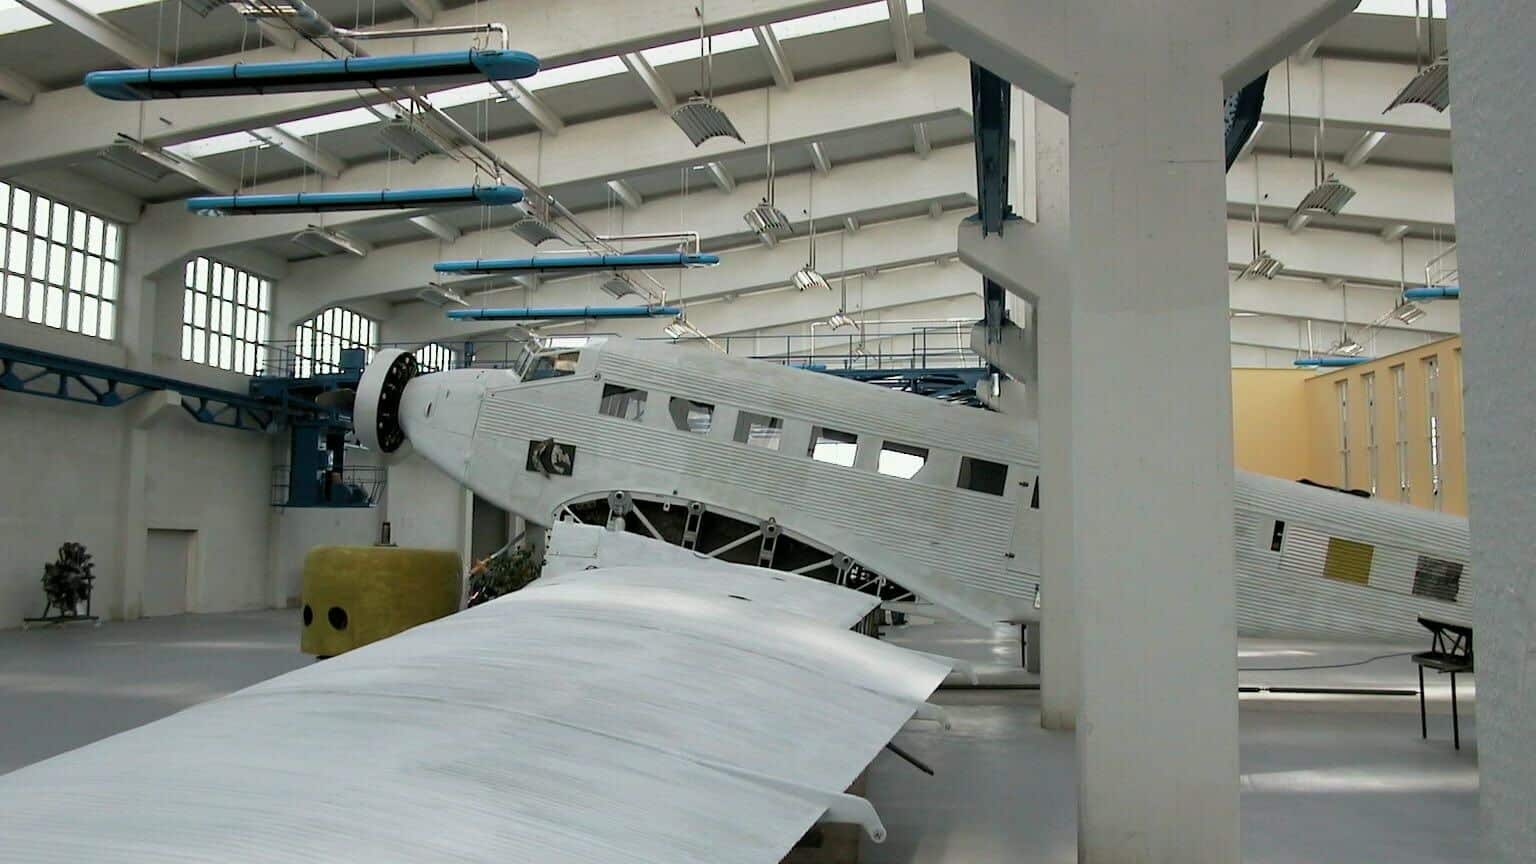 Flugzeugausstellung in großem Hangar.